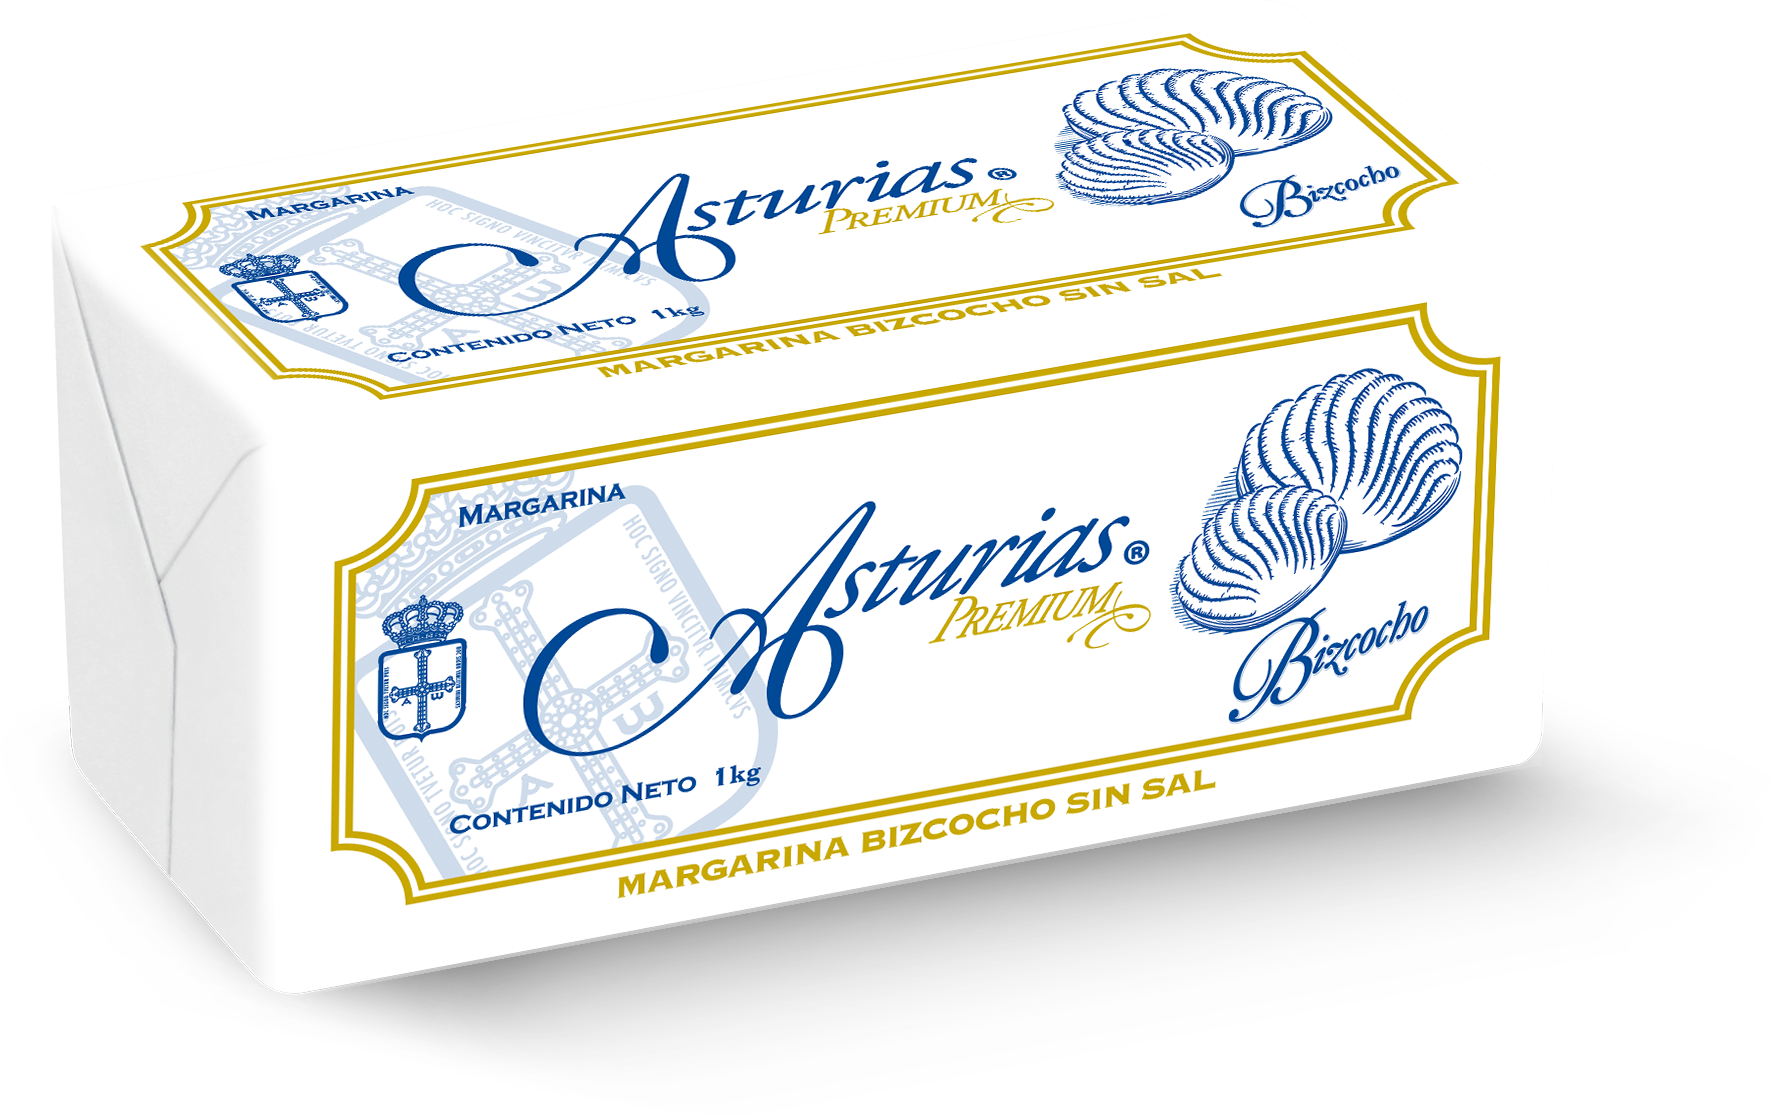 39  |  Asturias Premium Bizcocho
Caja de 10 kg (10 barras de 1 kg)